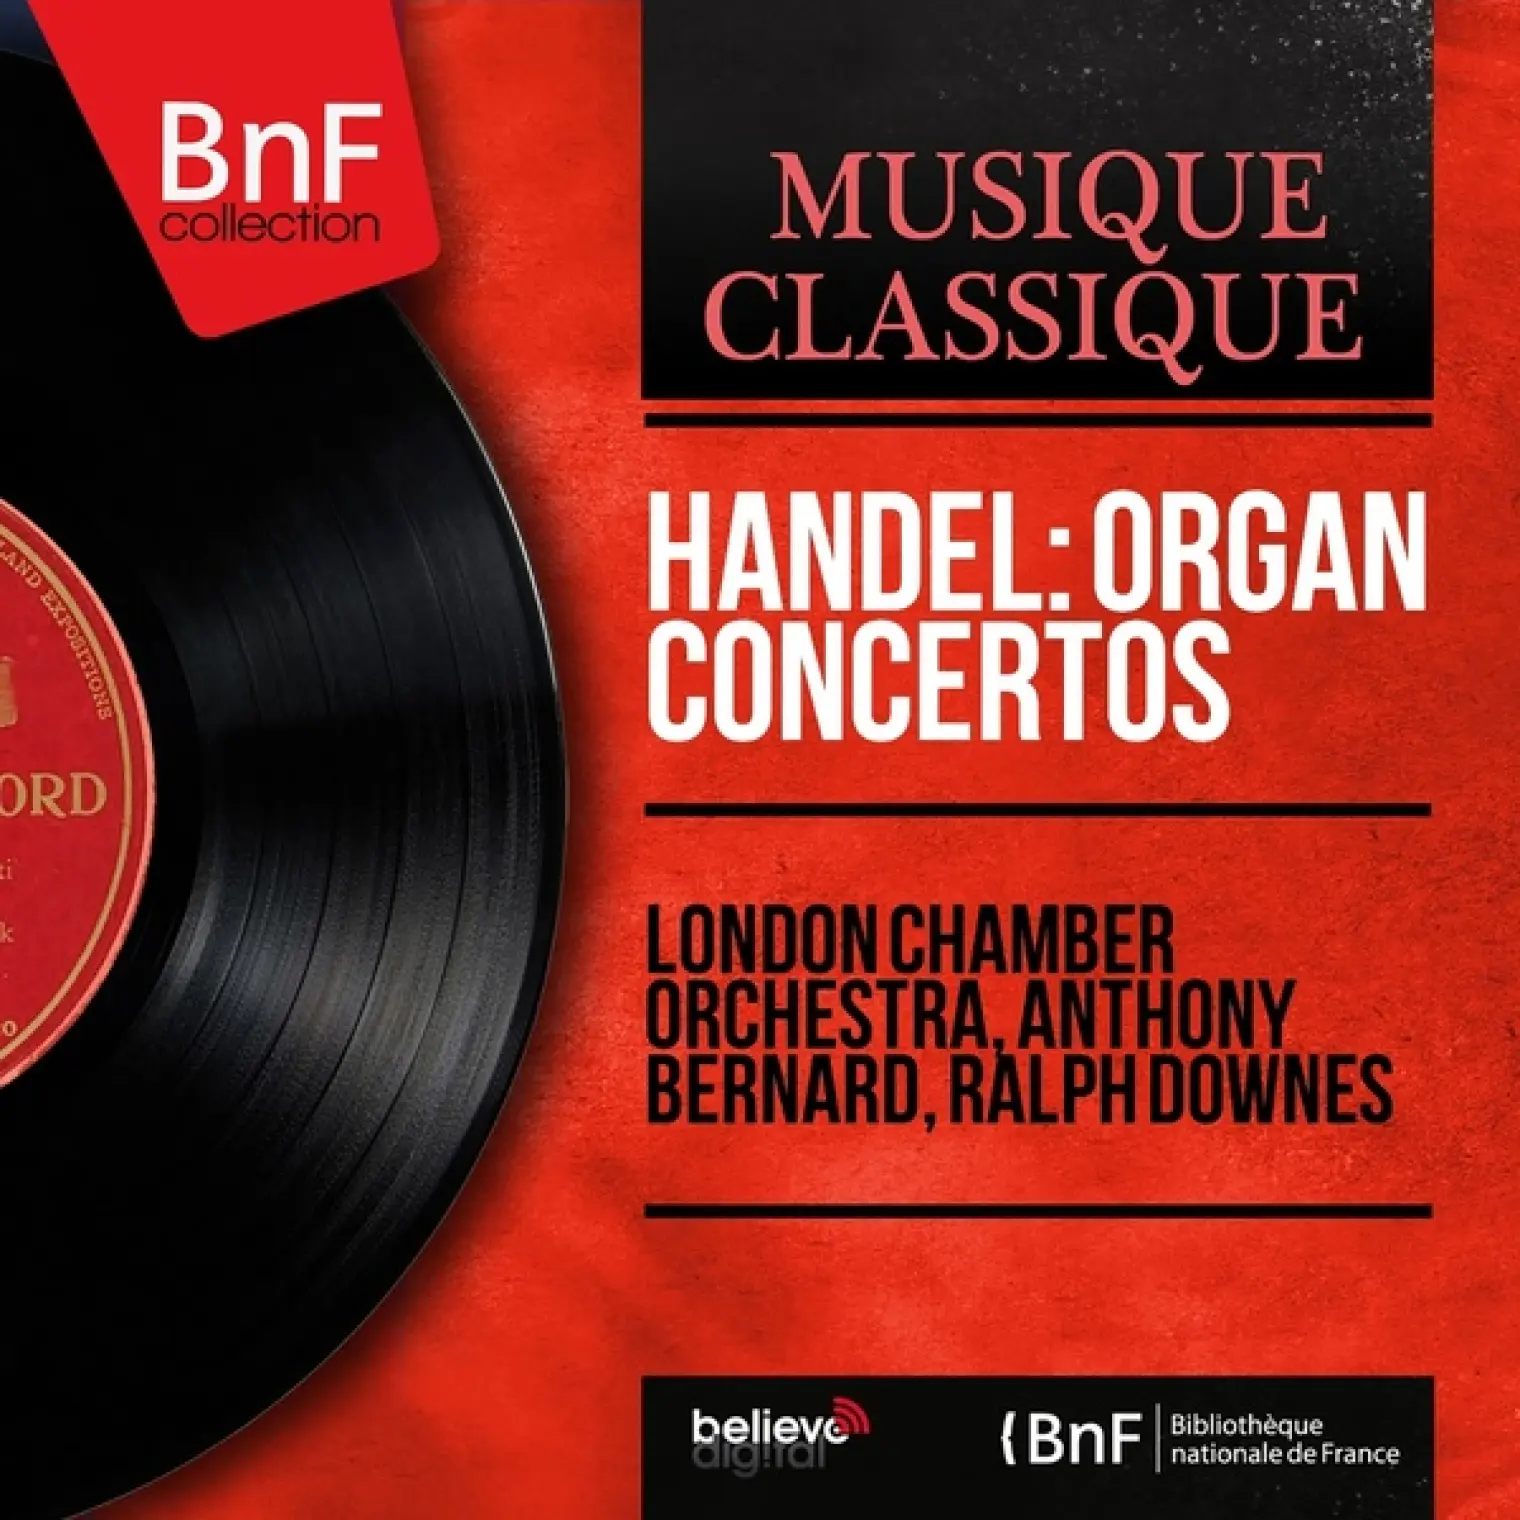 Handel: Organ Concertos (Mono Version) -  London Chamber Orchestra 